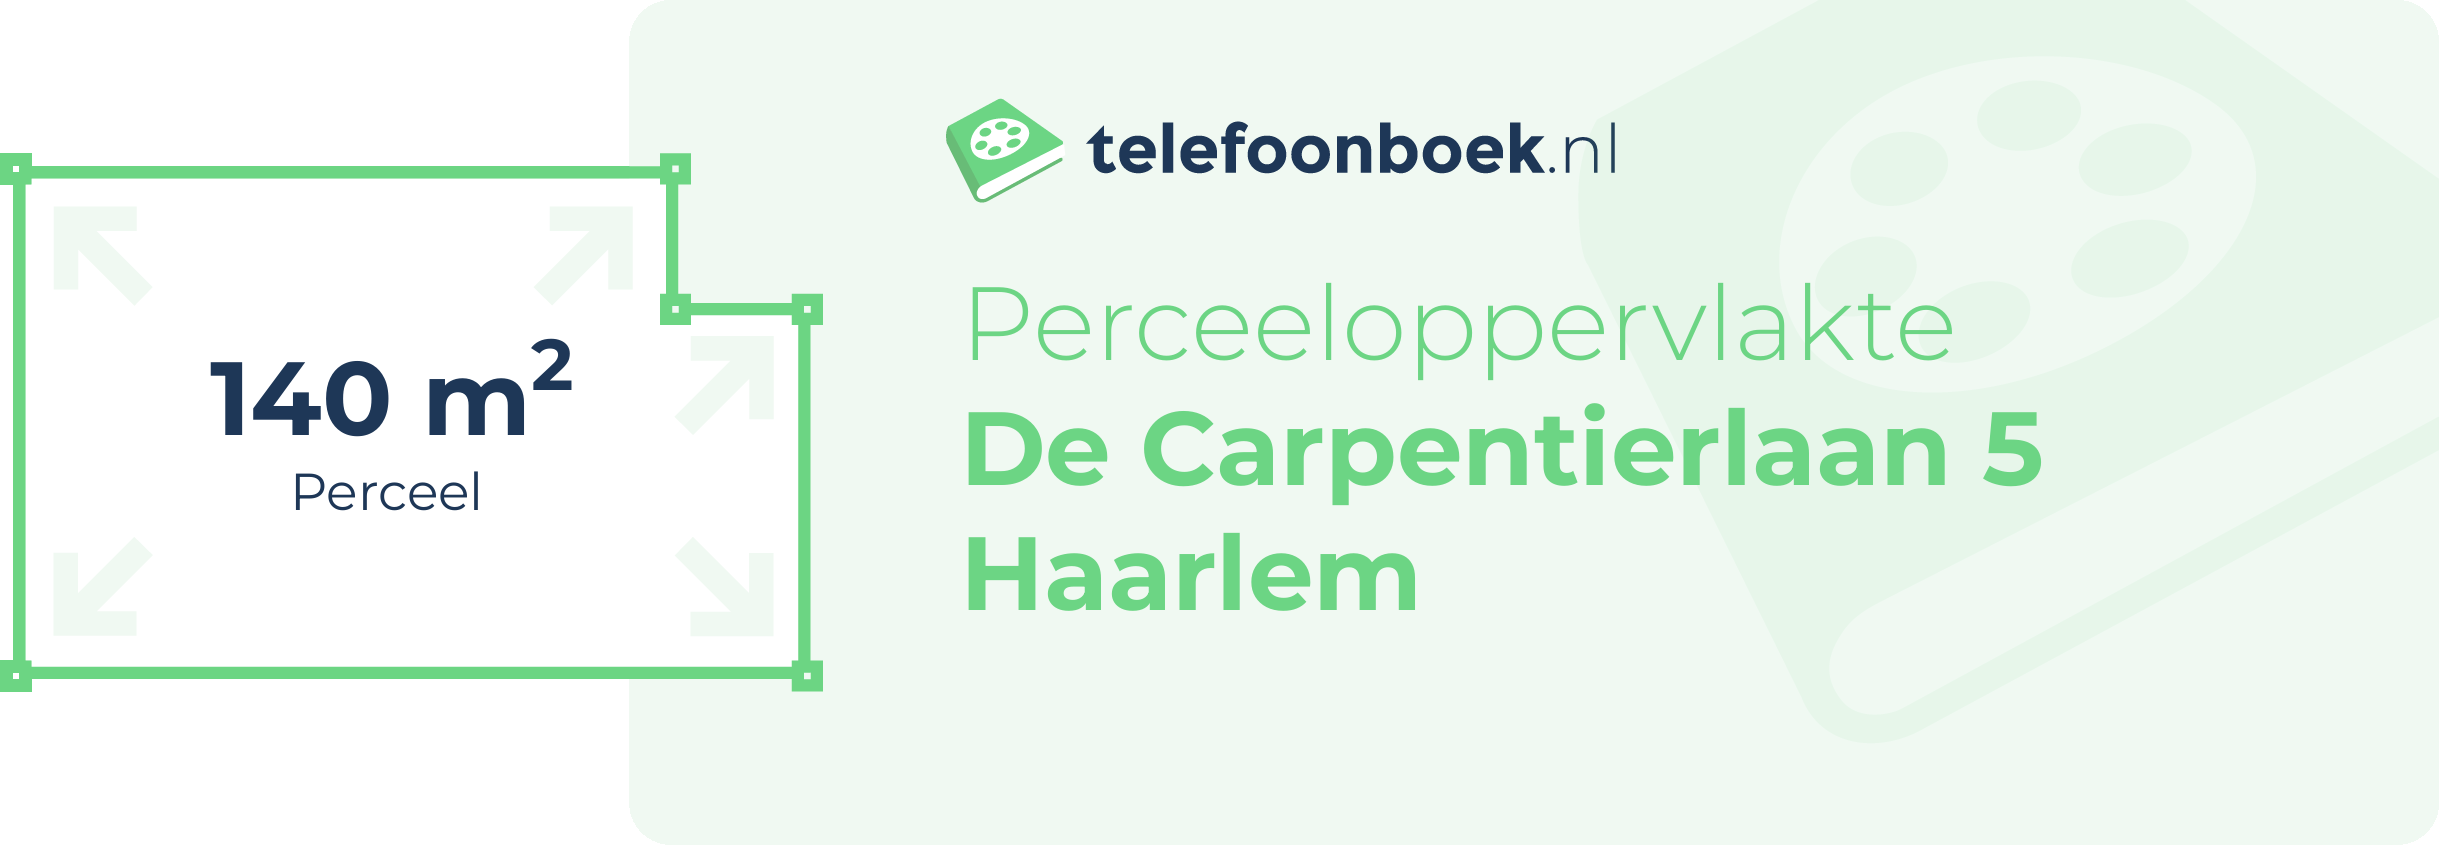 Perceeloppervlakte De Carpentierlaan 5 Haarlem